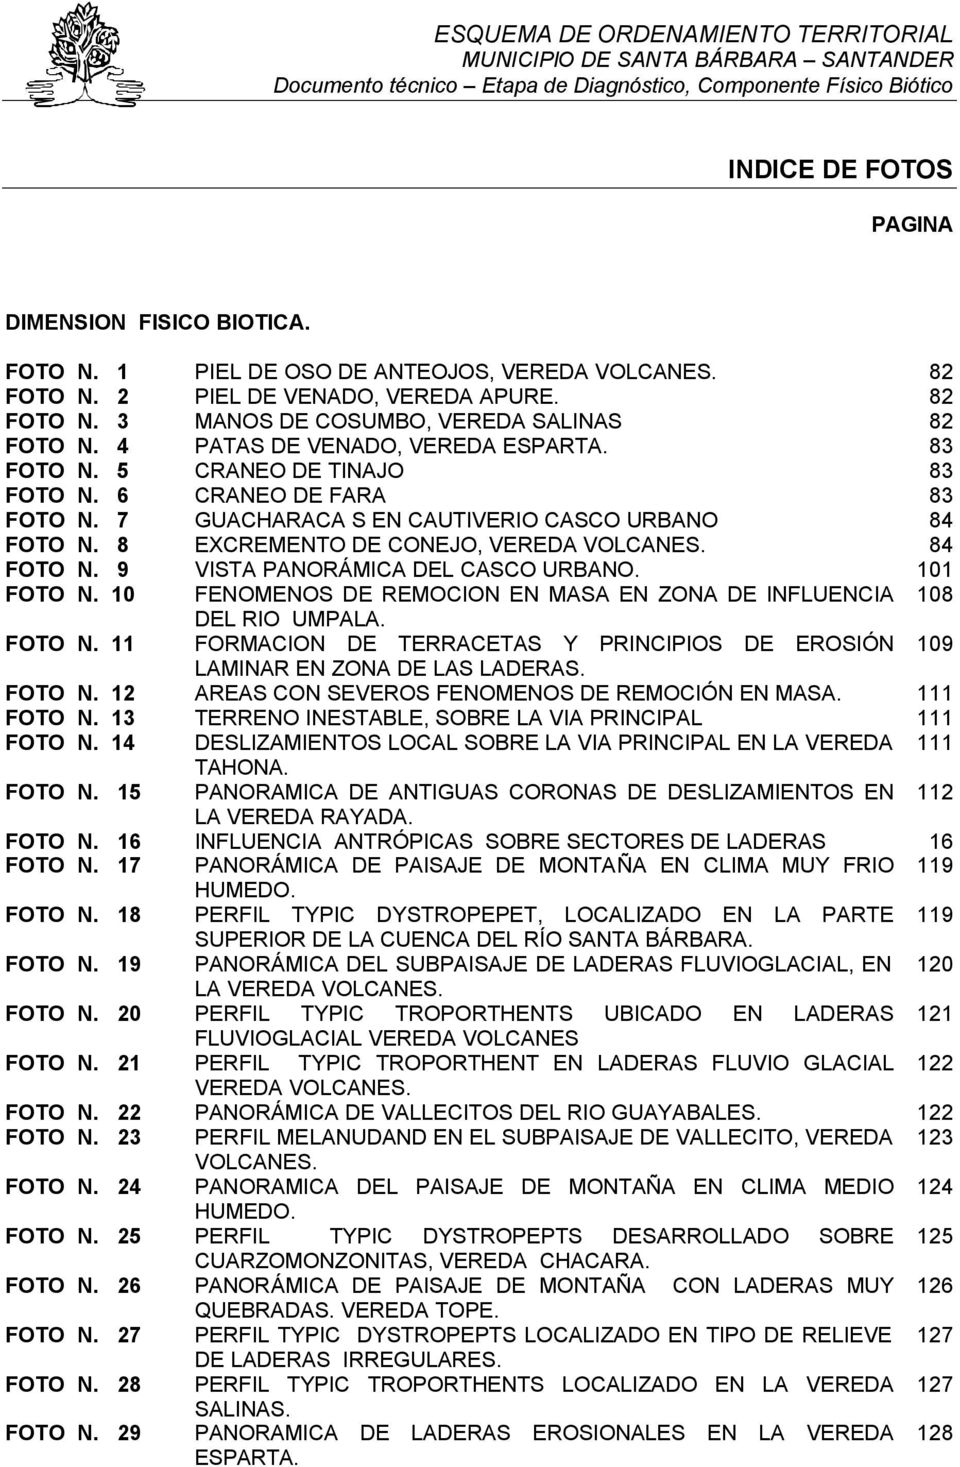 84 FOTO N. 9 VISTA PANORÁMICA DEL CASCO URBANO. 101 FOTO N. 10 FENOMENOS DE REMOCION EN MASA EN ZONA DE INFLUENCIA 108 DEL RIO UMPALA. FOTO N. 11 FORMACION DE TERRACETAS Y PRINCIPIOS DE EROSIÓN 109 LAMINAR EN ZONA DE LAS LADERAS.